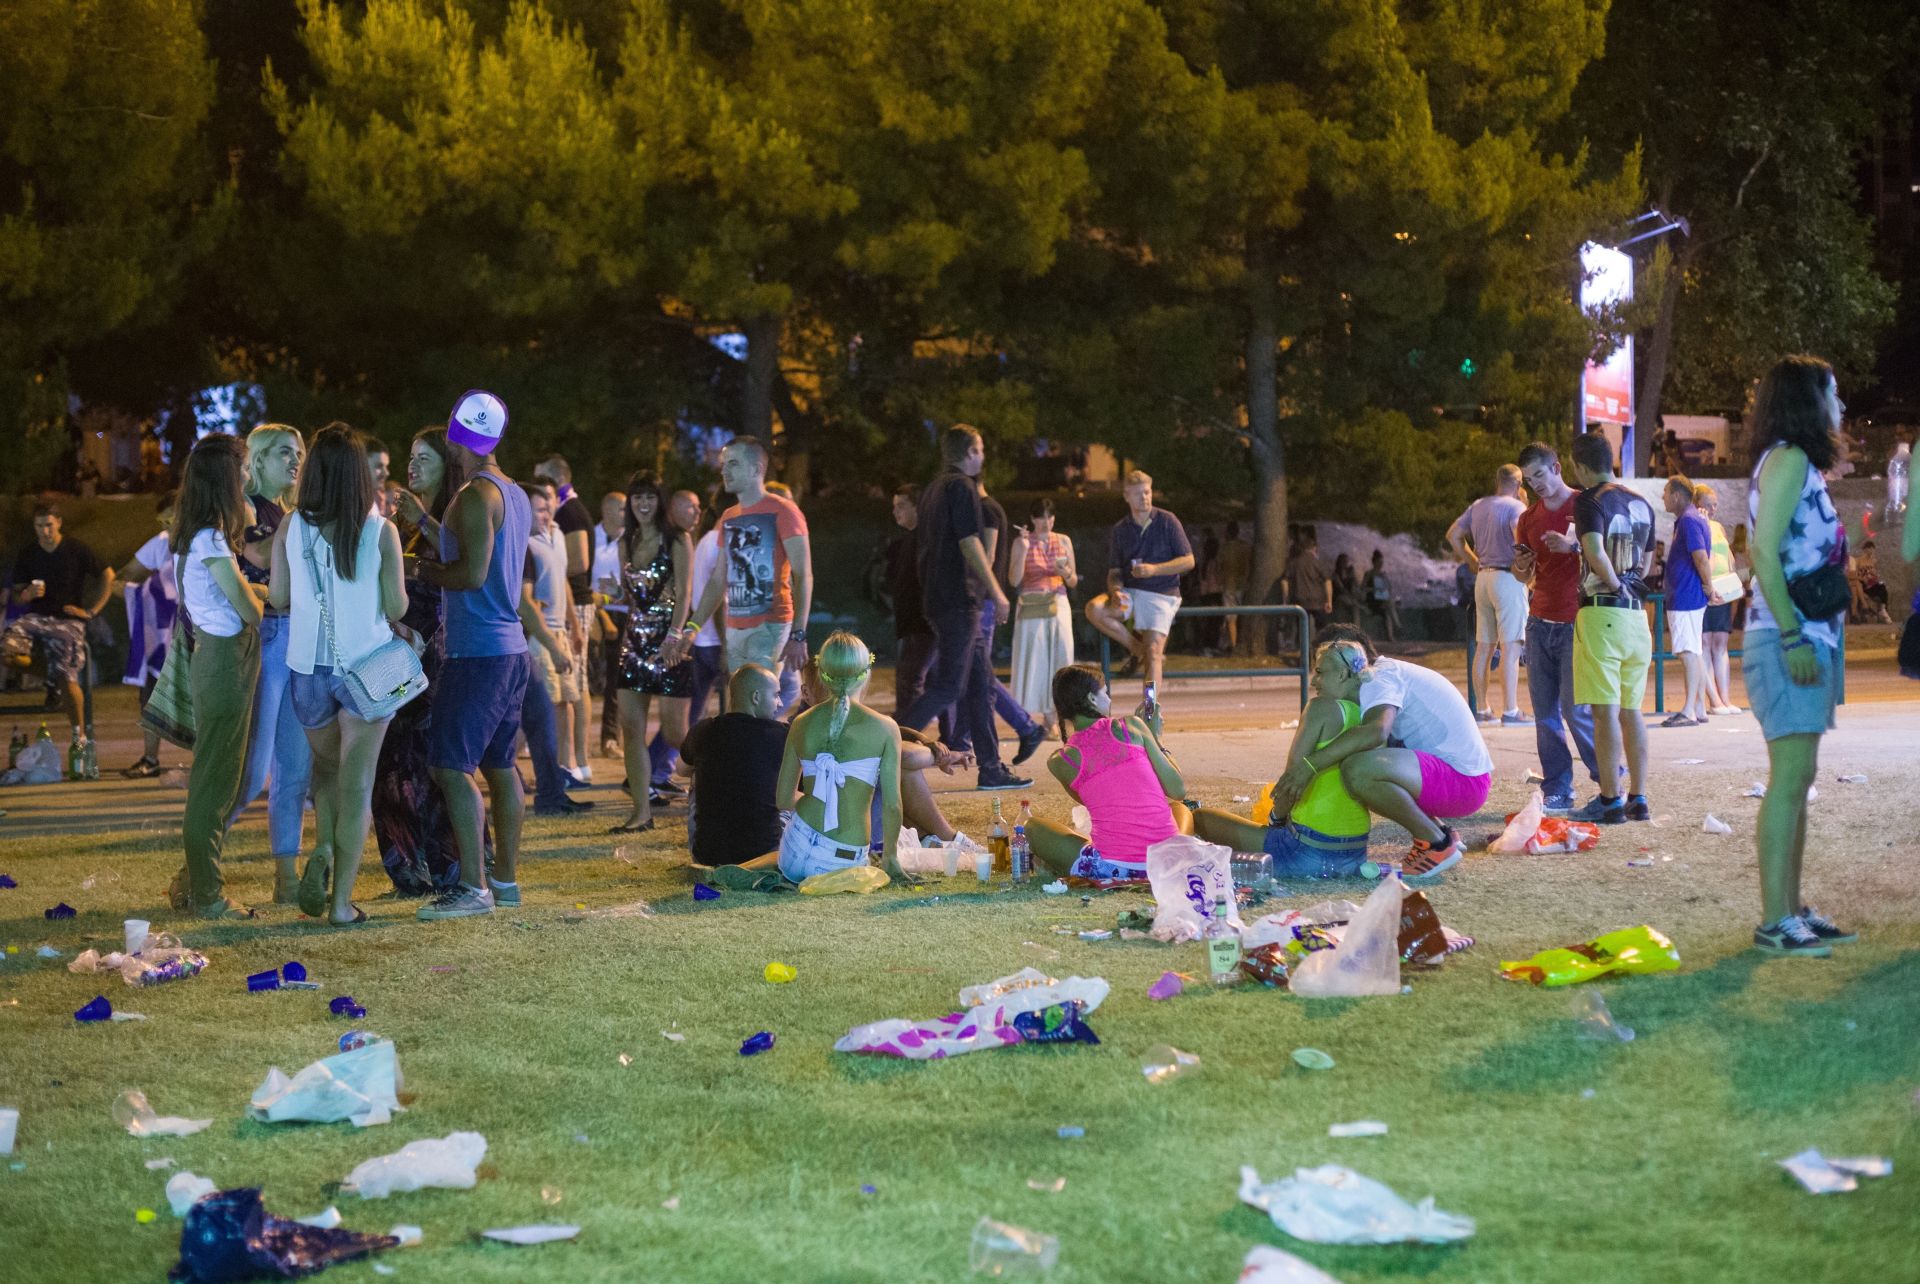 12.07.2015., Split - Posjetitelji Ultra Europe 2015 festivala odmaraju ispred stadiona Poljud.
Photo: Davor Puklavec/PIXSELL